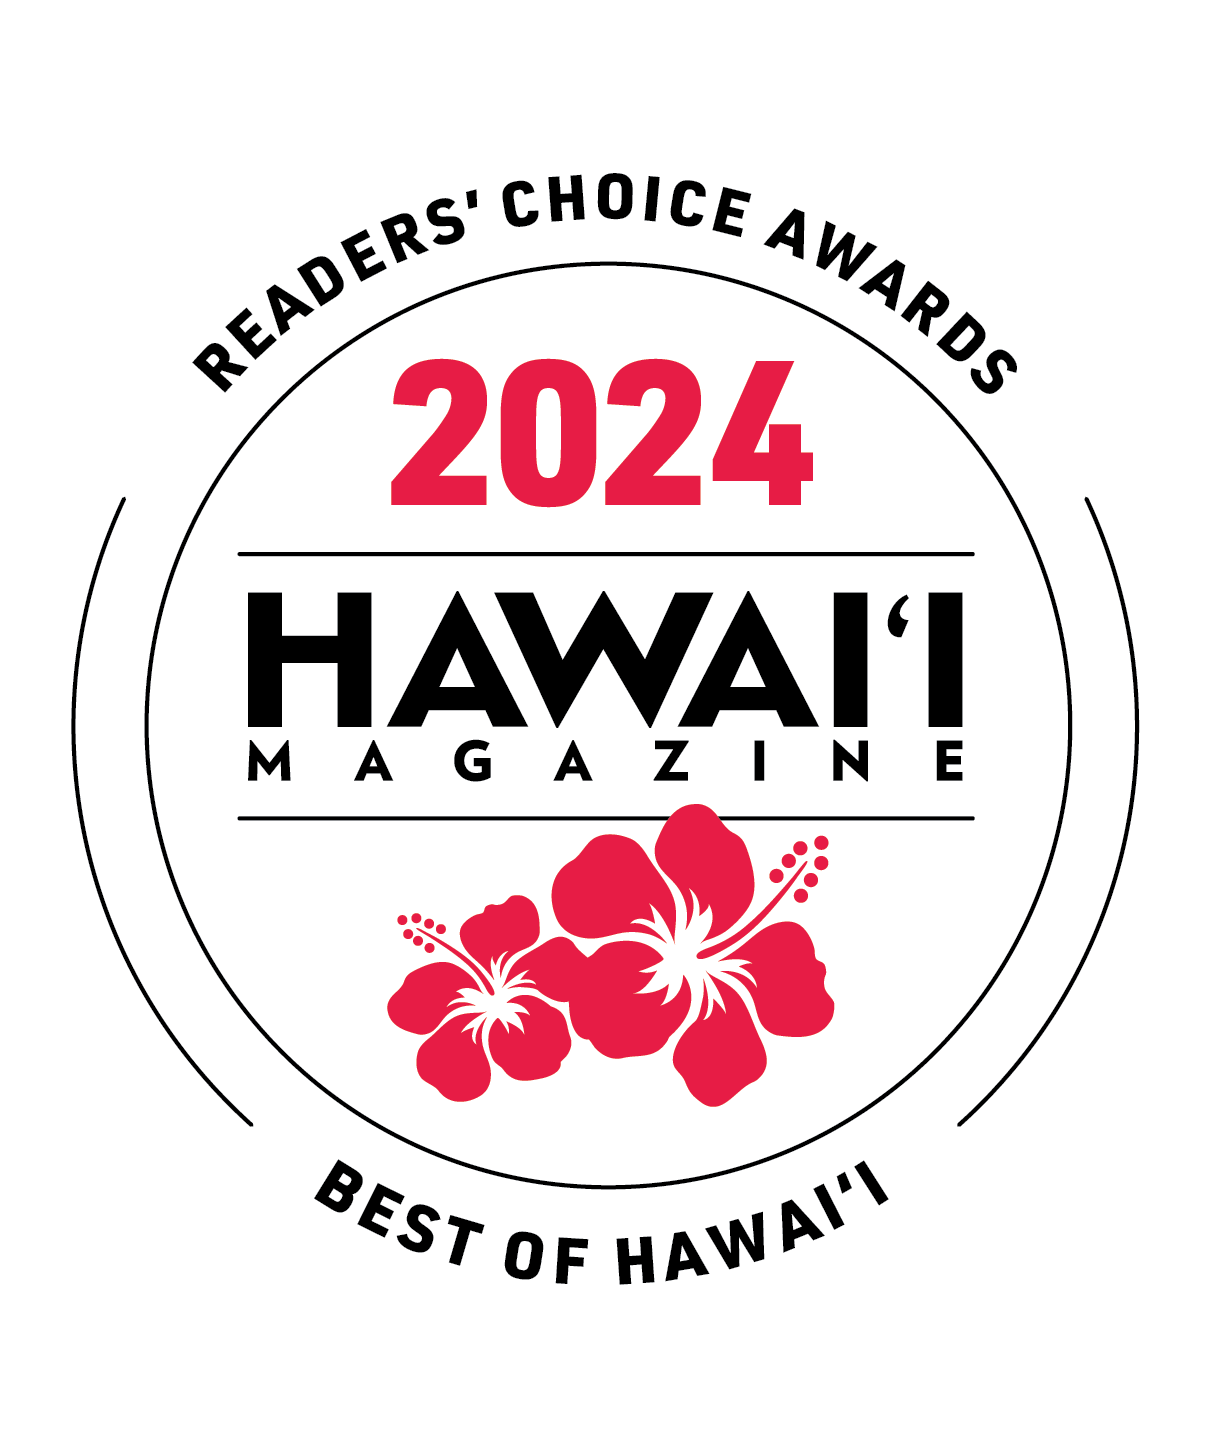 2024 Hawaii Magazine Readers' Choice Awards - Best of Hawaii